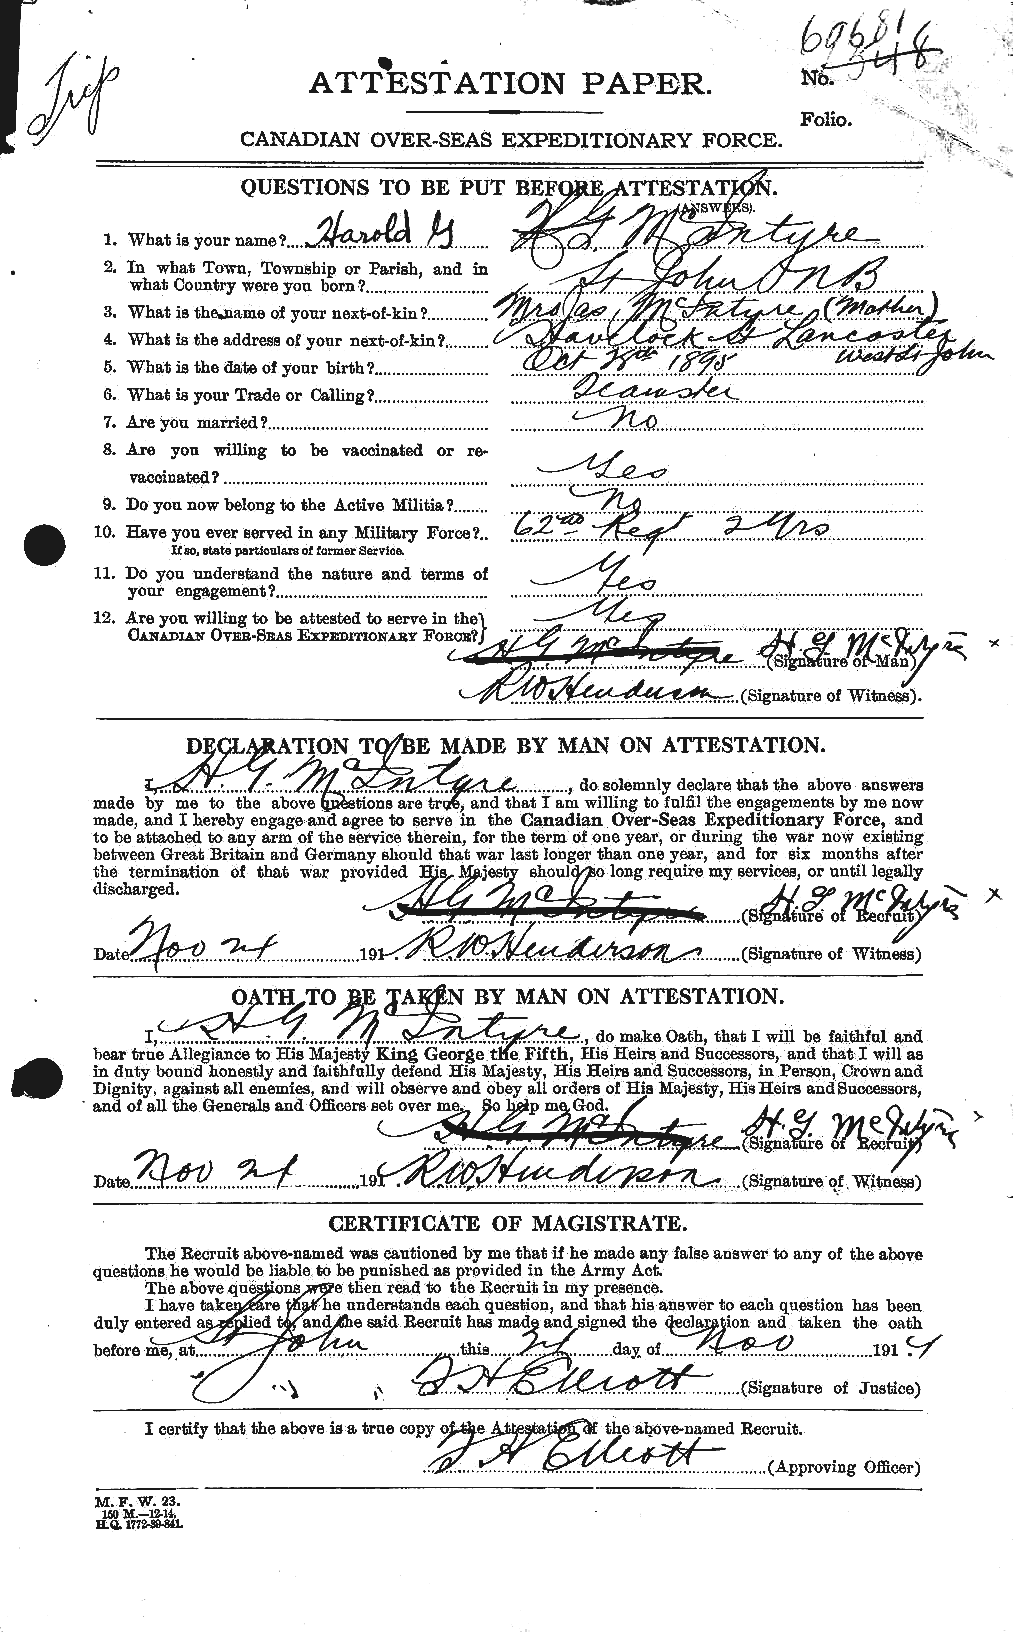 Dossiers du Personnel de la Première Guerre mondiale - CEC 527407a